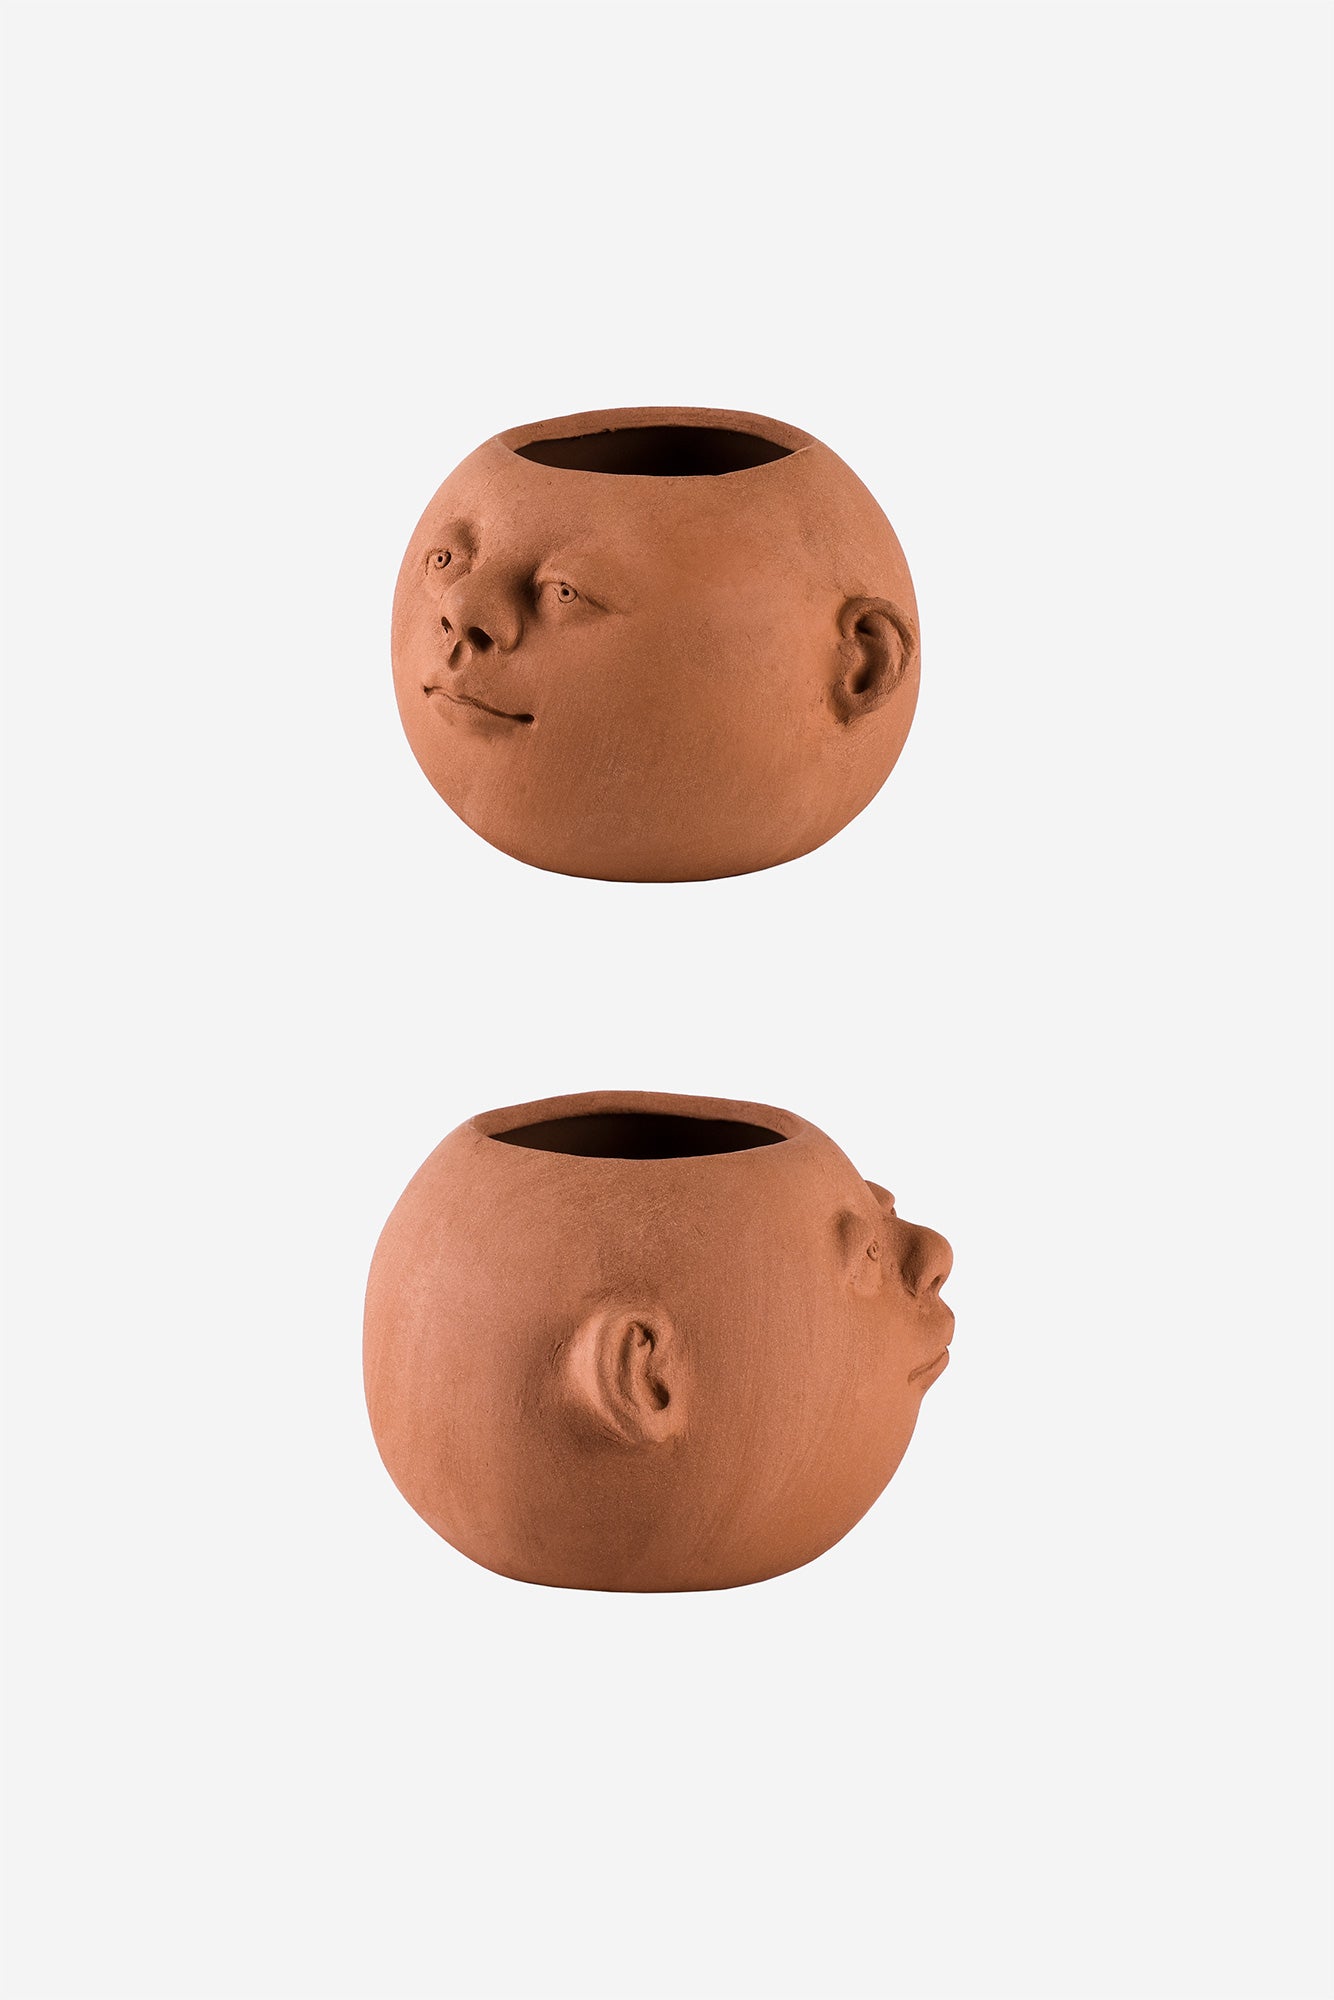 Terracotta Visage Head Planter – Online8